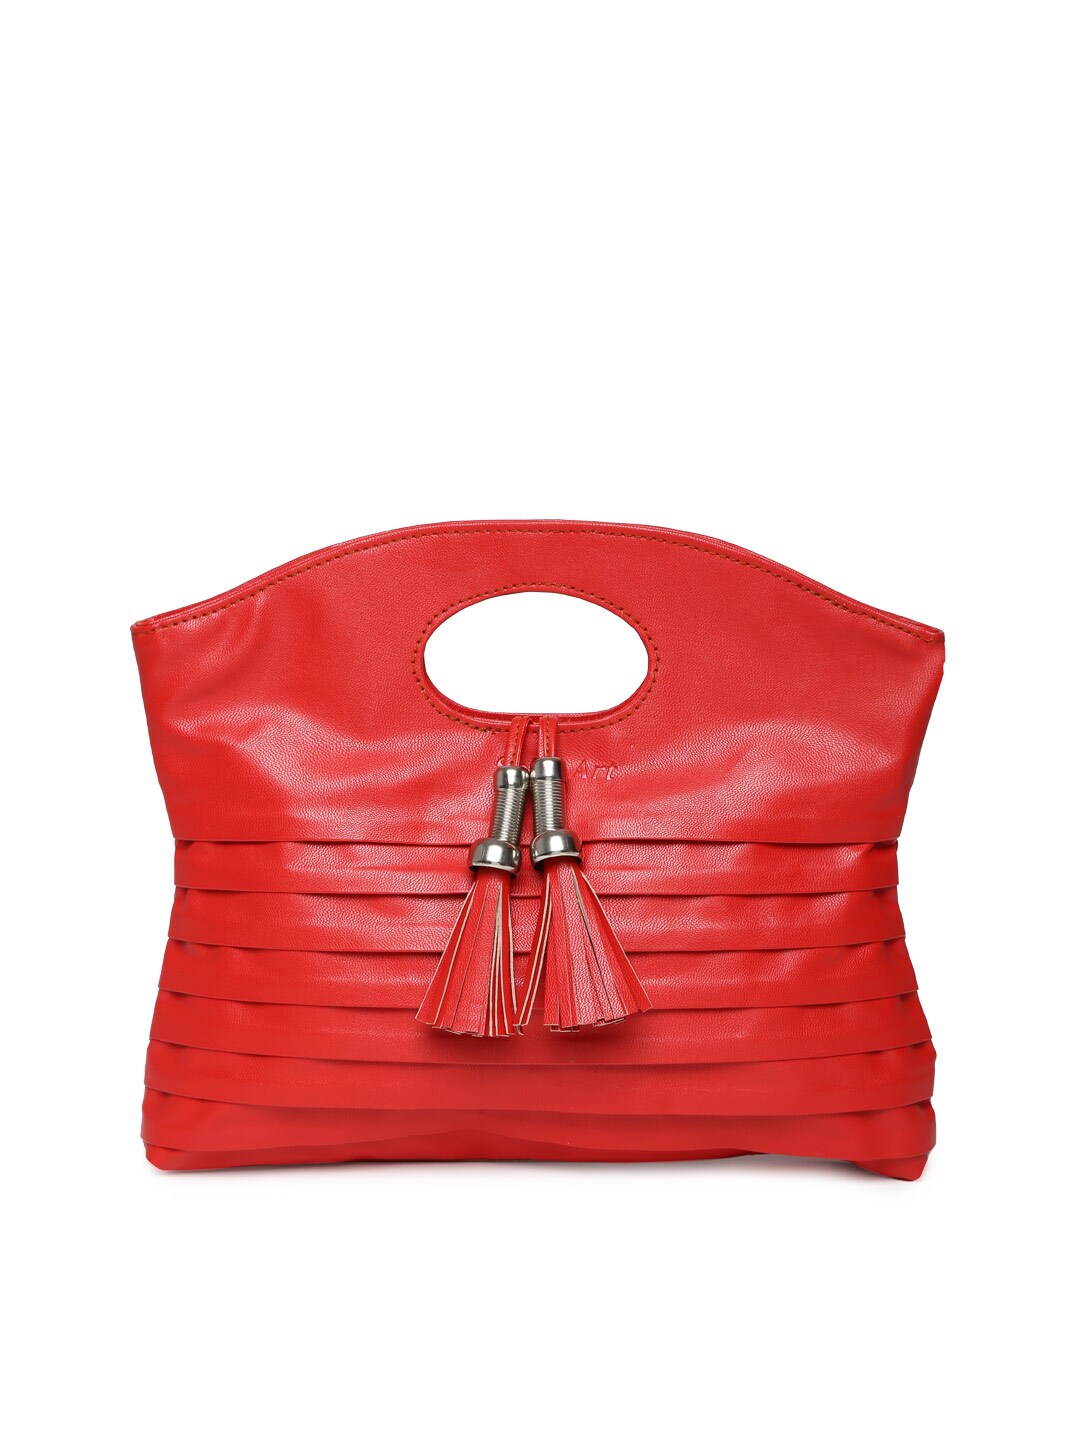 Spice Art Women Red Handbag